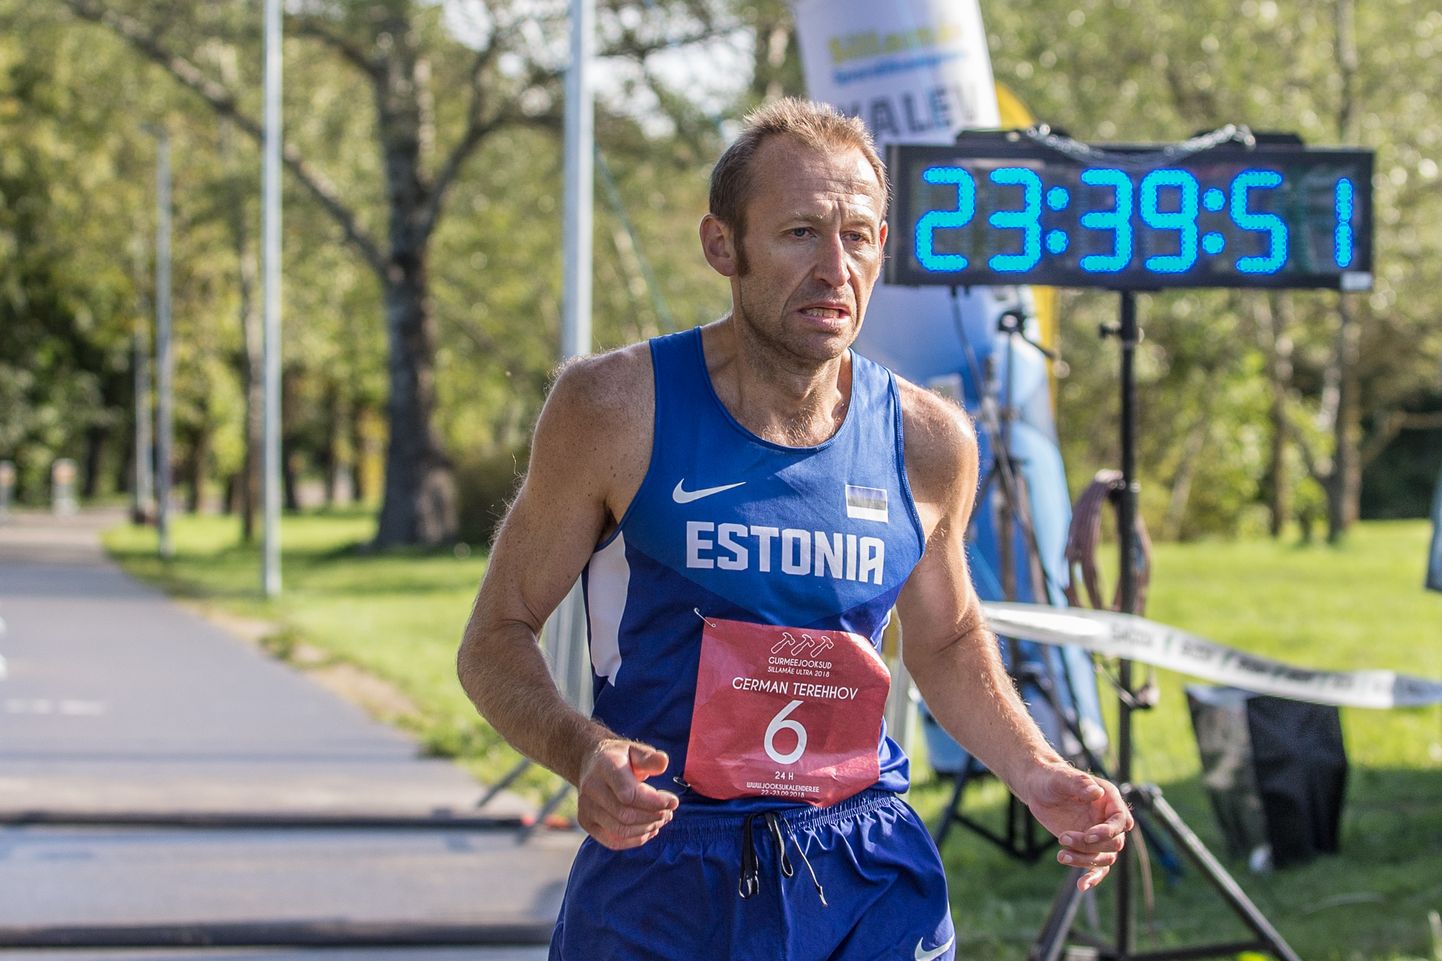 Кохтлаярвесец Герман Терехов преодолевает на прошлогоднем Силламяэском ультразабеге последние километры - к тому времени он бежал уже около 24 часов и оставил за спиной около 200 километров.